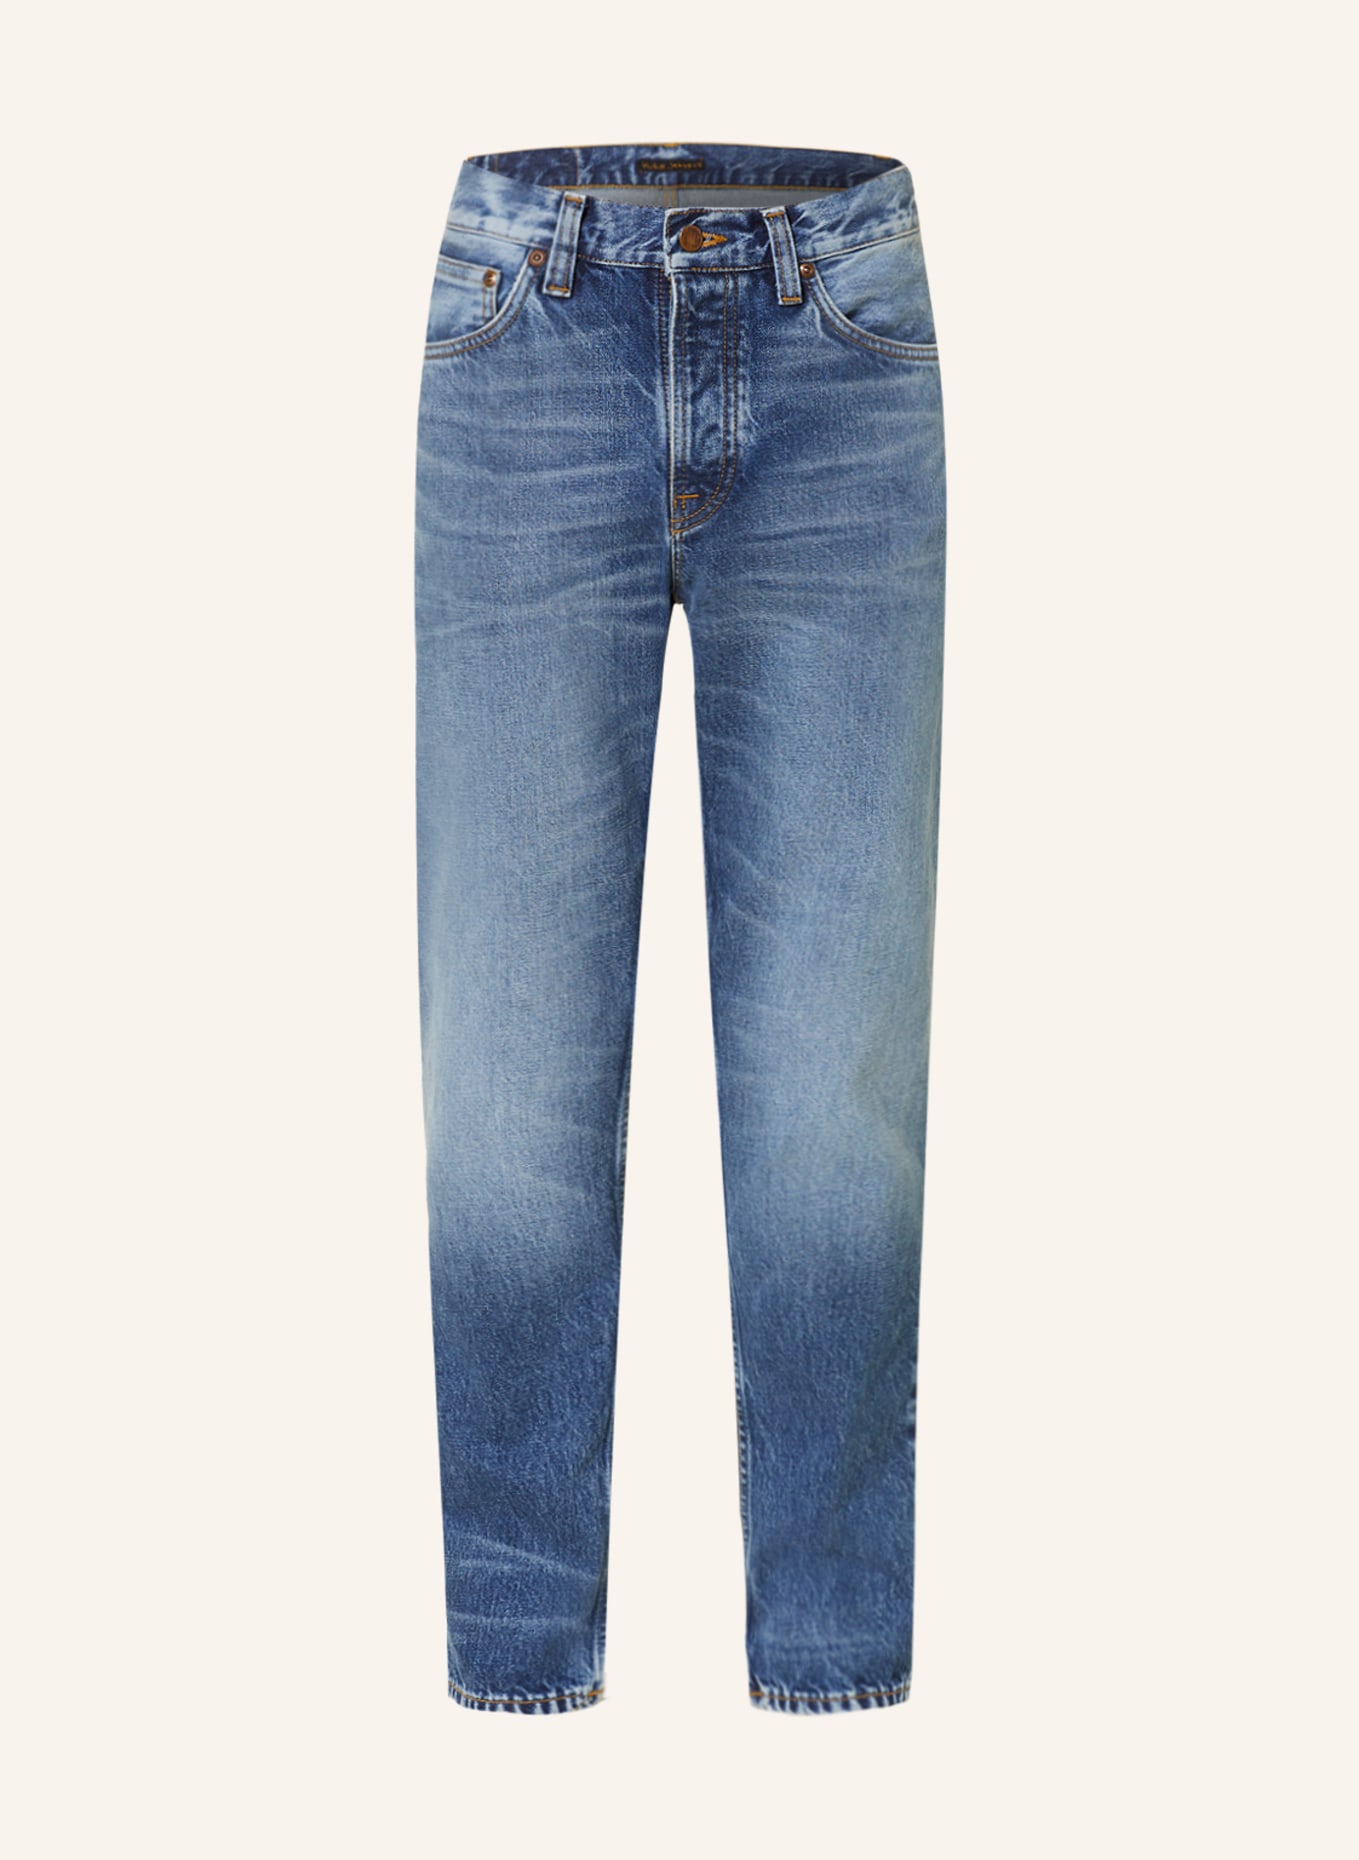 Nudie Jeans Jeans STEADY EDDIE II tapered fit, Color: Blue Tornado (Image 1)